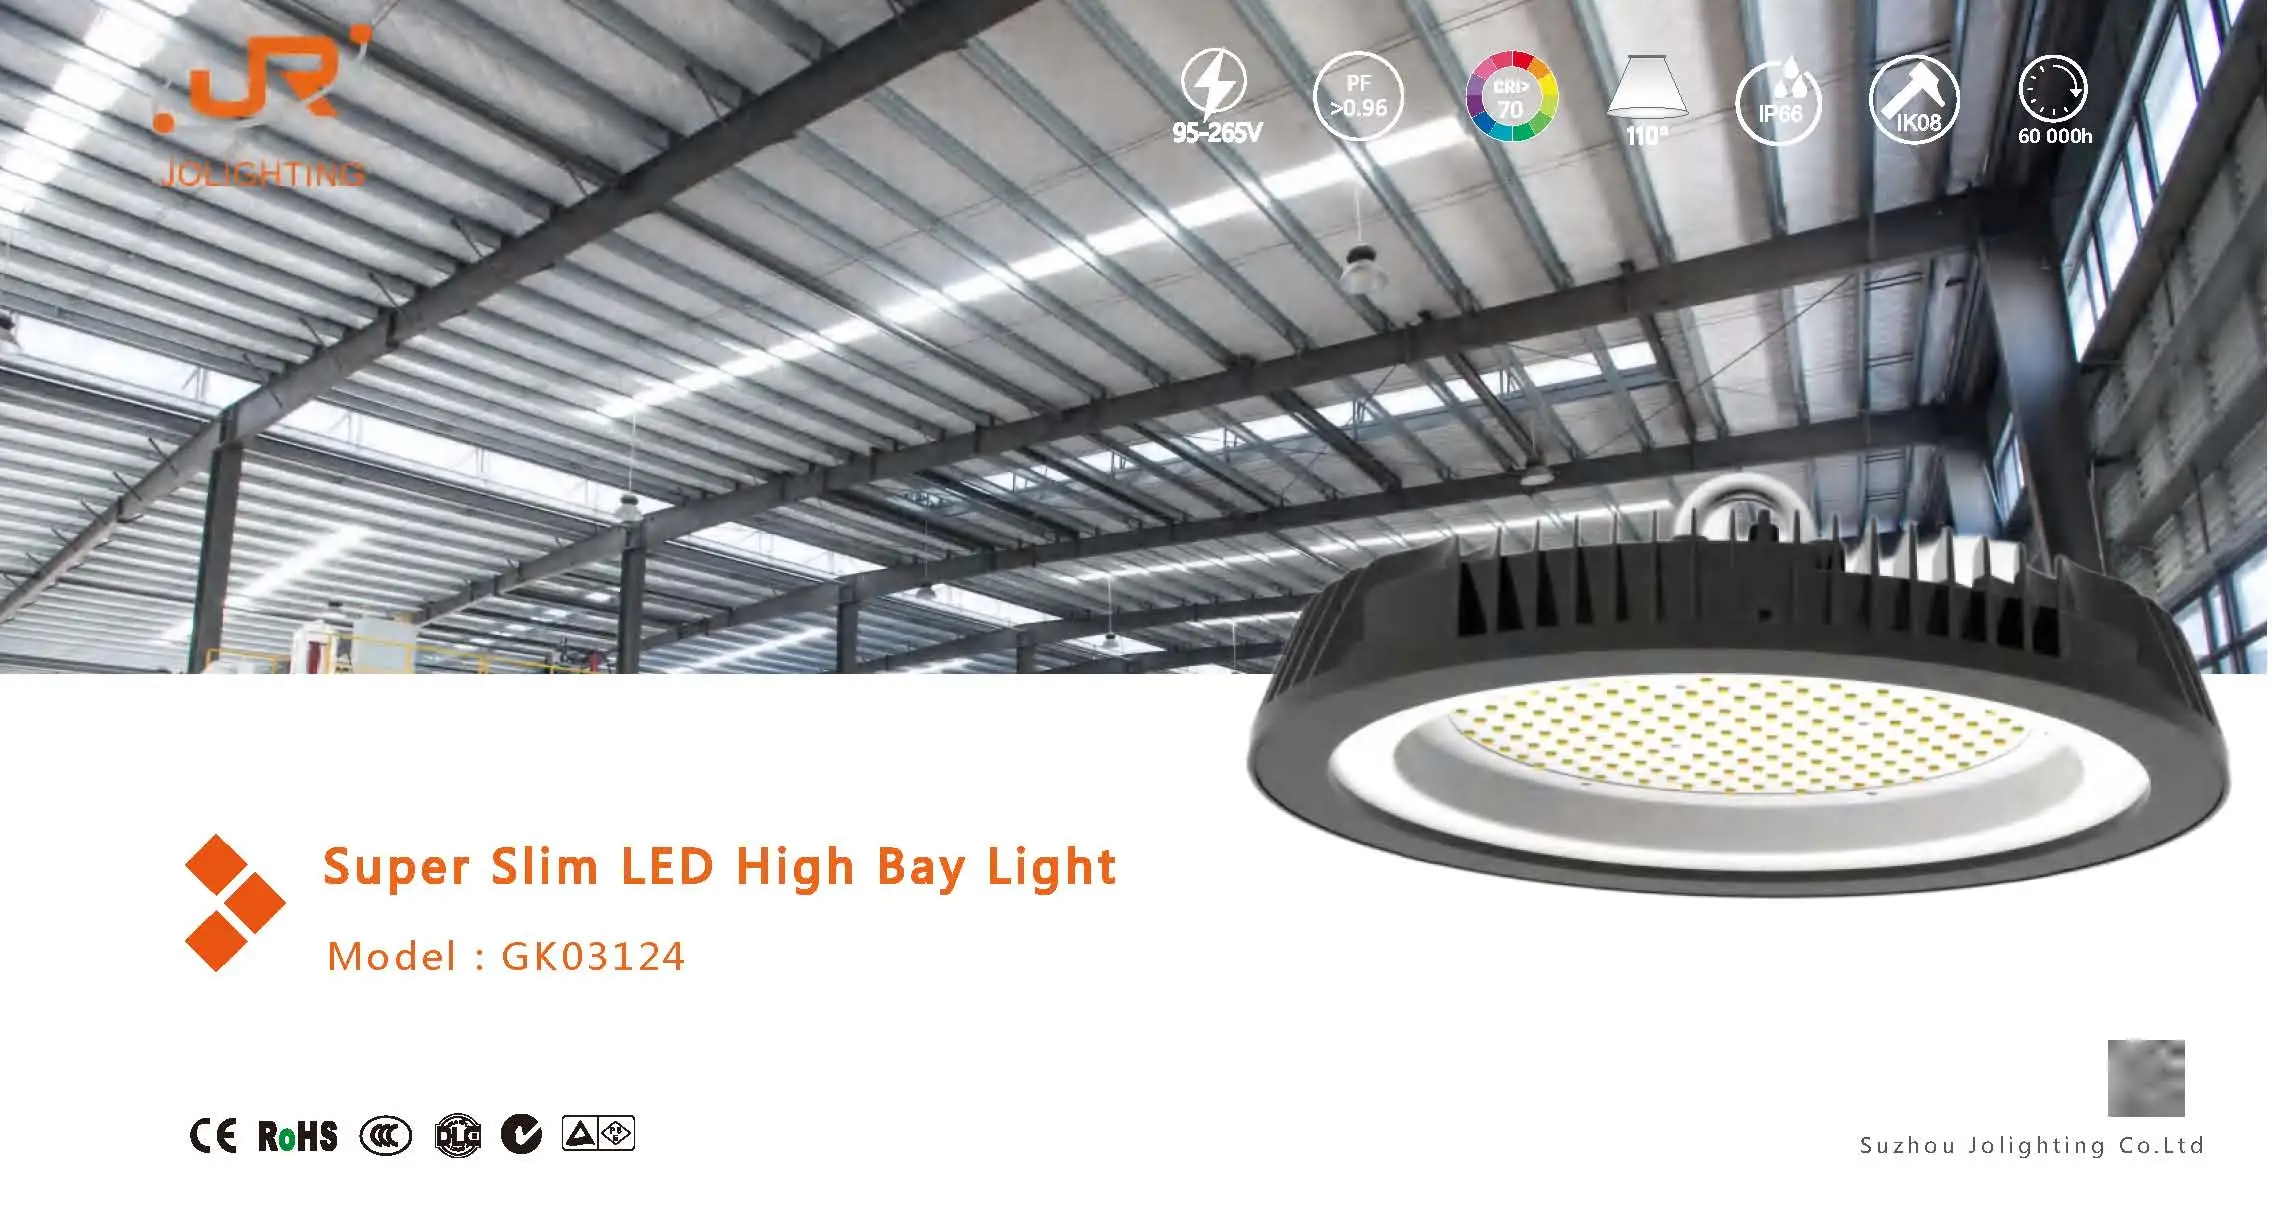 LED High Bay Light  GK03124 Series